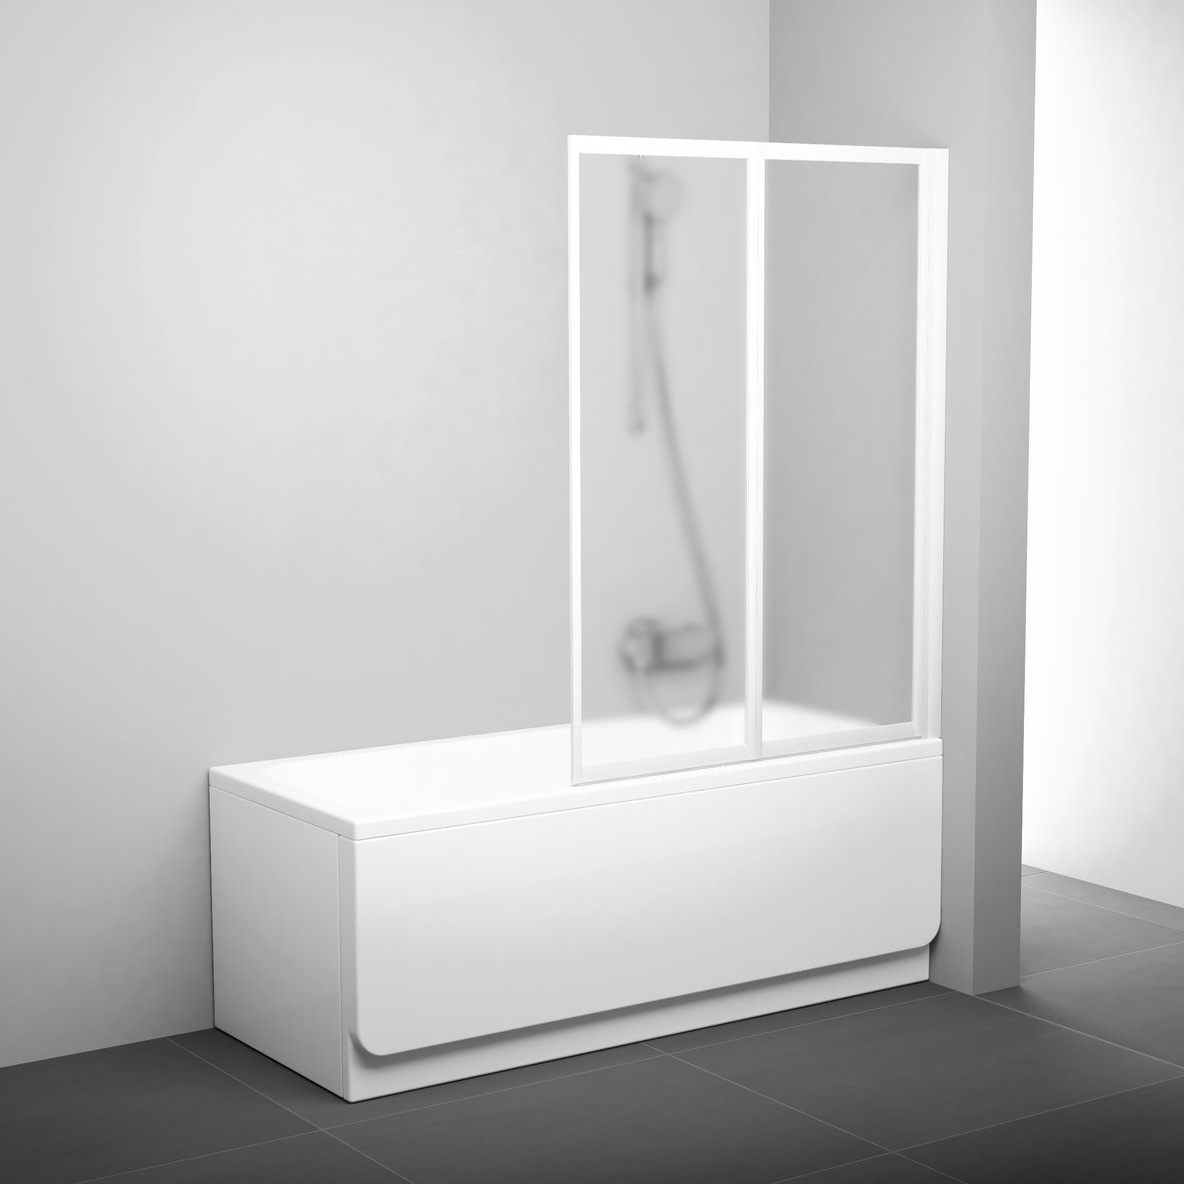 Шторка стеклянная для ванны универсальная двухсекционная складная 140x105см RAVAK CITY SLIM VS2 105 стекло матовое 3мм профиль белый 796M0100ZG